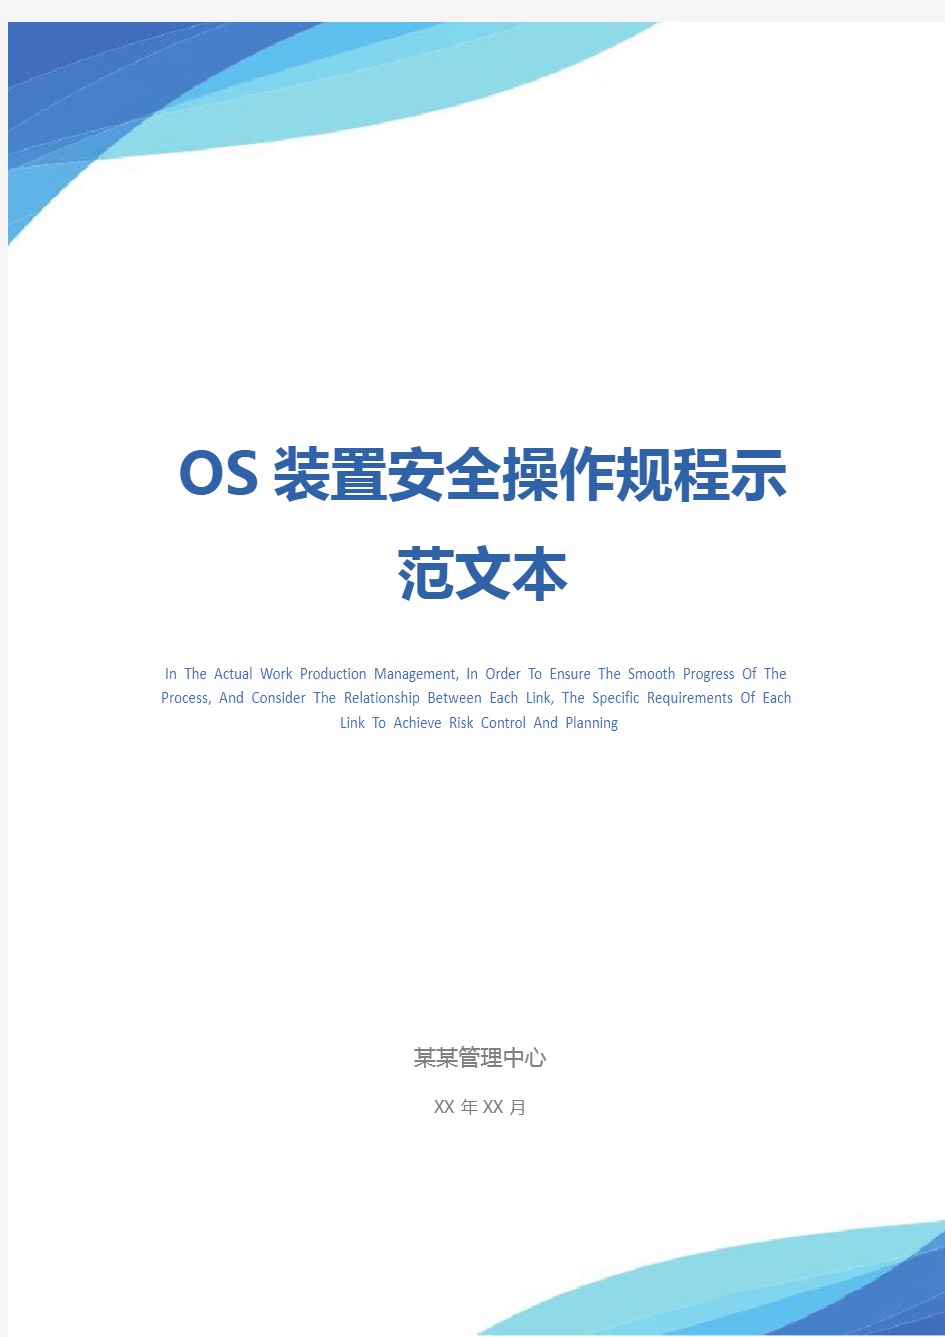 OS装置安全操作规程示范文本